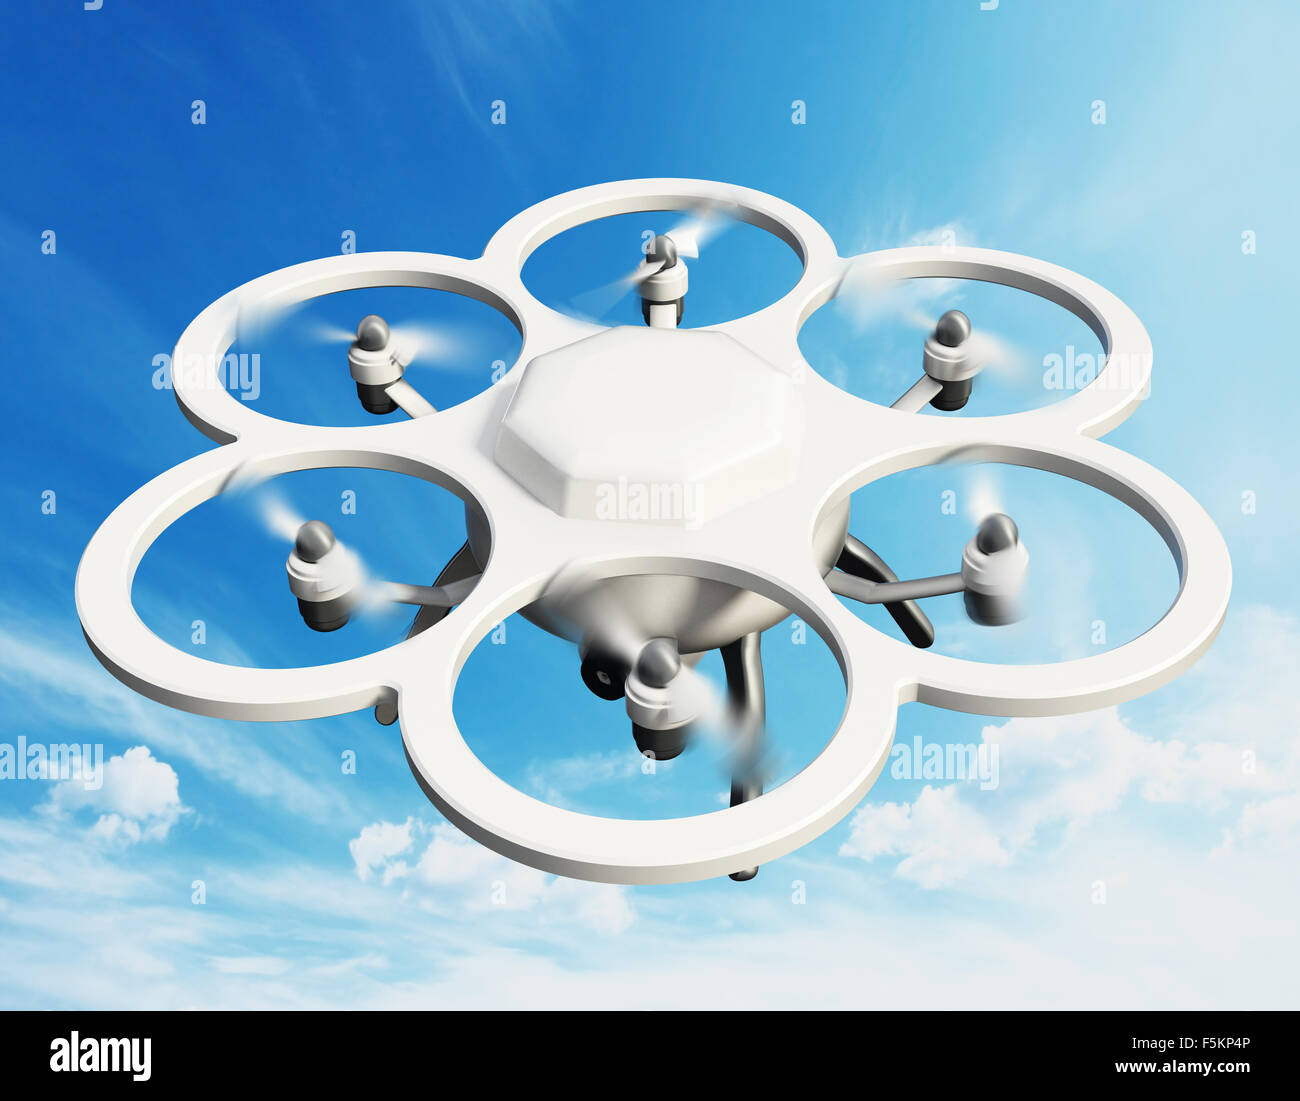 Drone avec six hélices sur fond bleu Banque D'Images